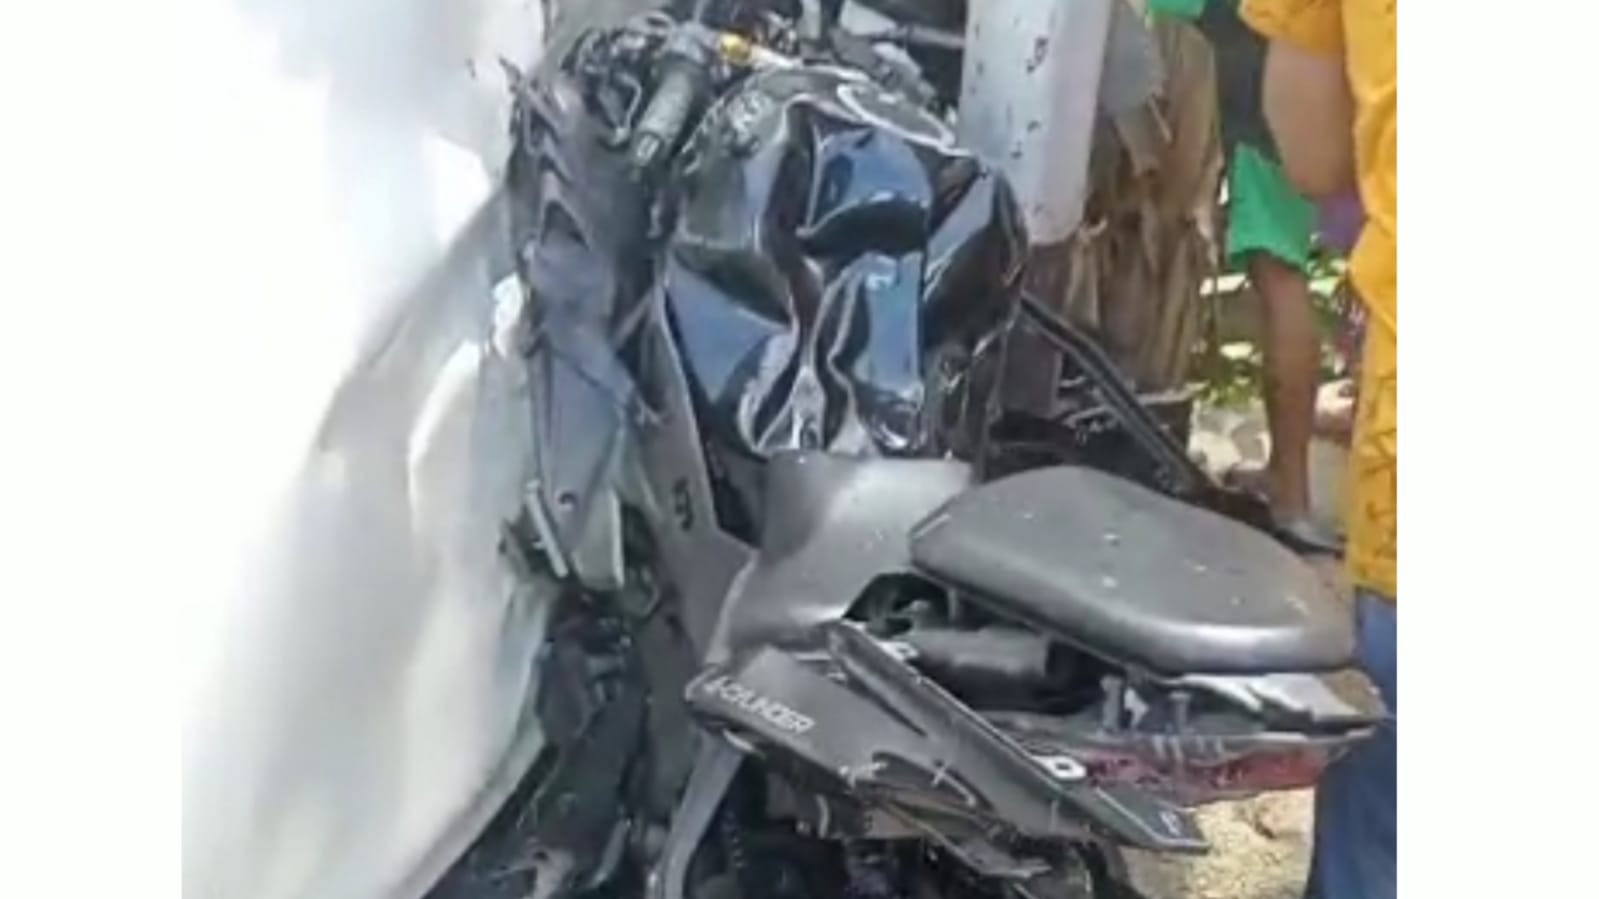 Foto Insiden KM 19, Antara Motor Vs Mobil